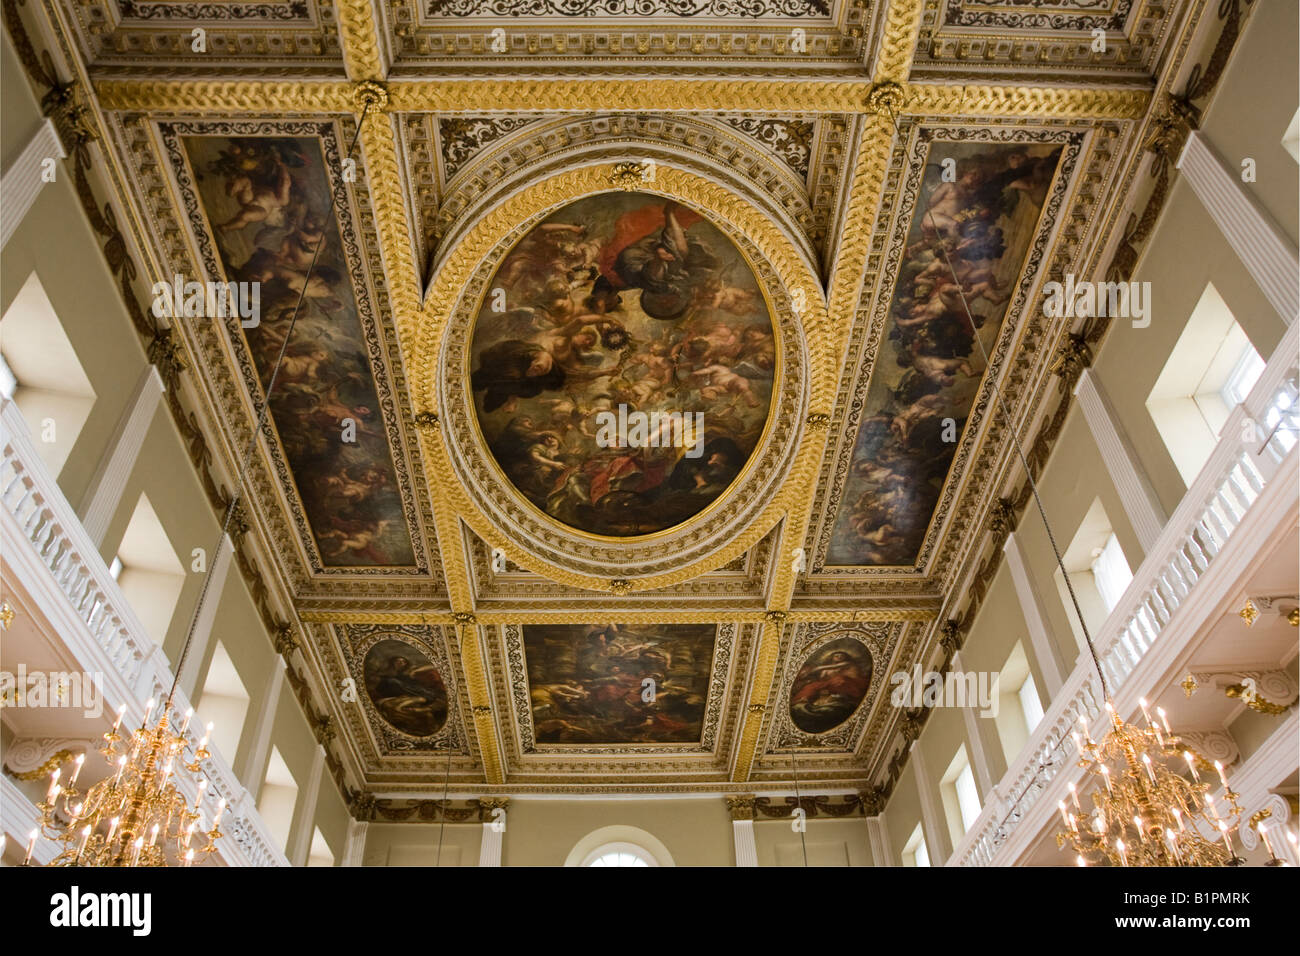 Le plafond peint Banqueting House Whitehall Londres Angleterre.Le seul  plafond in-situ peinture de Pierre Paul Rubens Photo Stock - Alamy